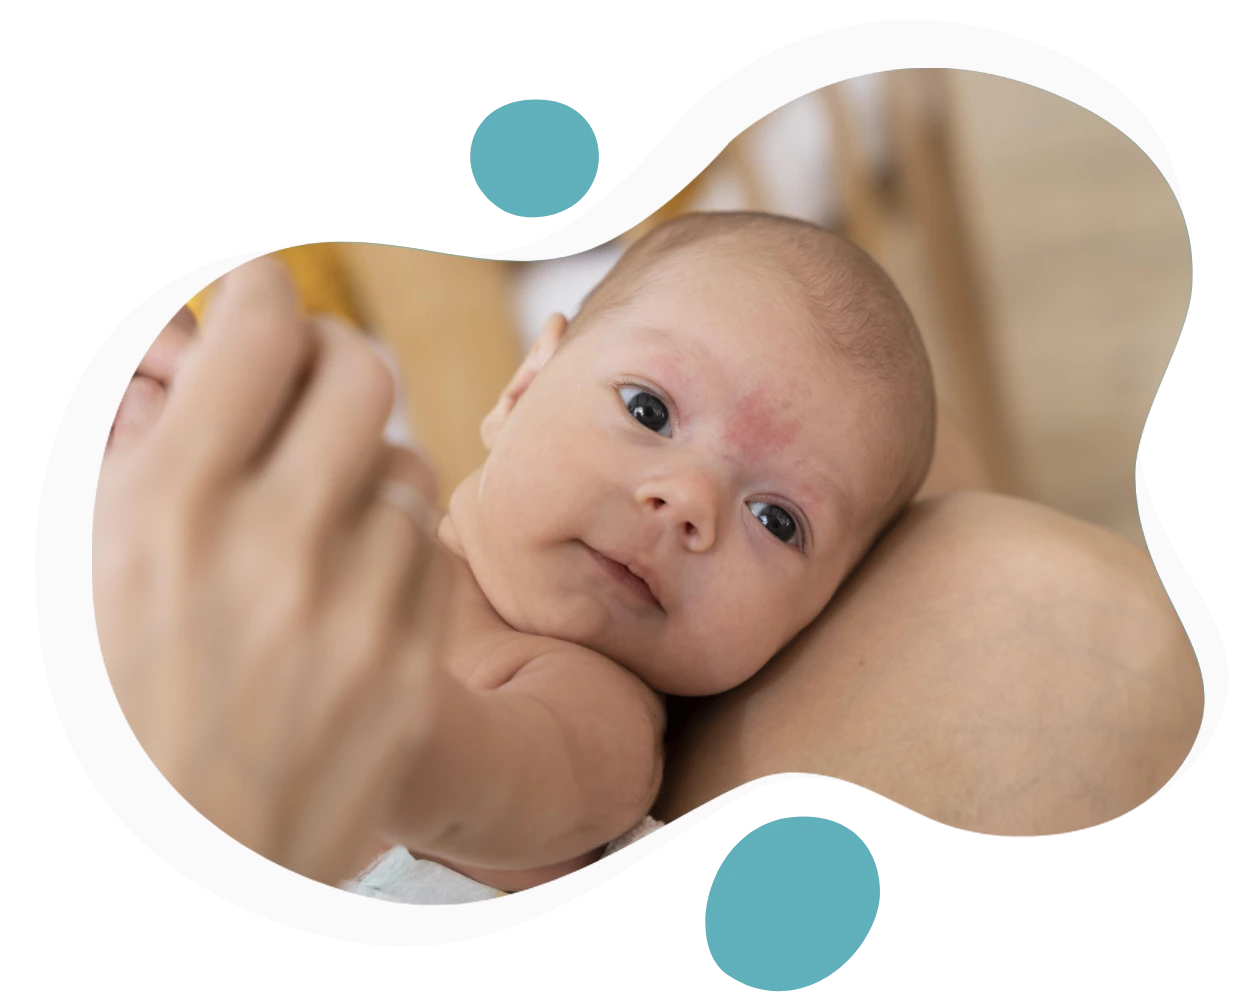 Bebeklerde Kontakt Dermatit Nedenleri ve Tedavisi